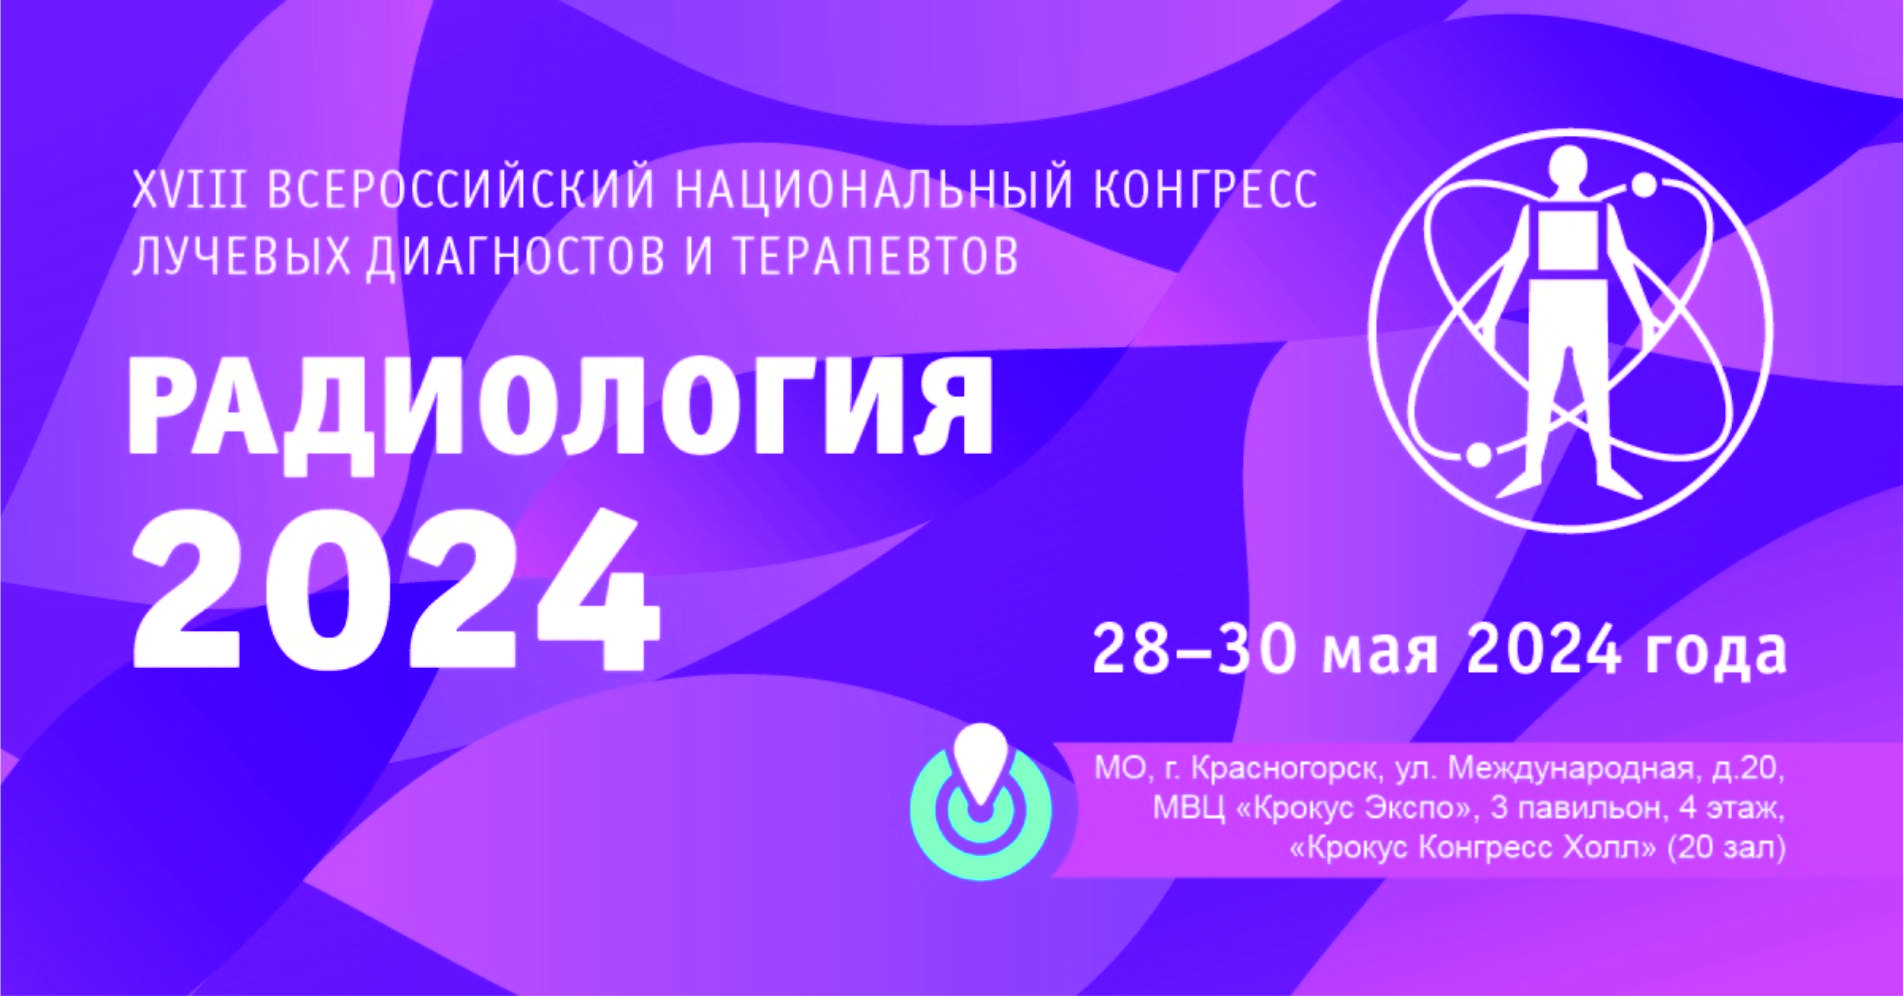 Всероссийский национальный конгресс «Радиология–2024»